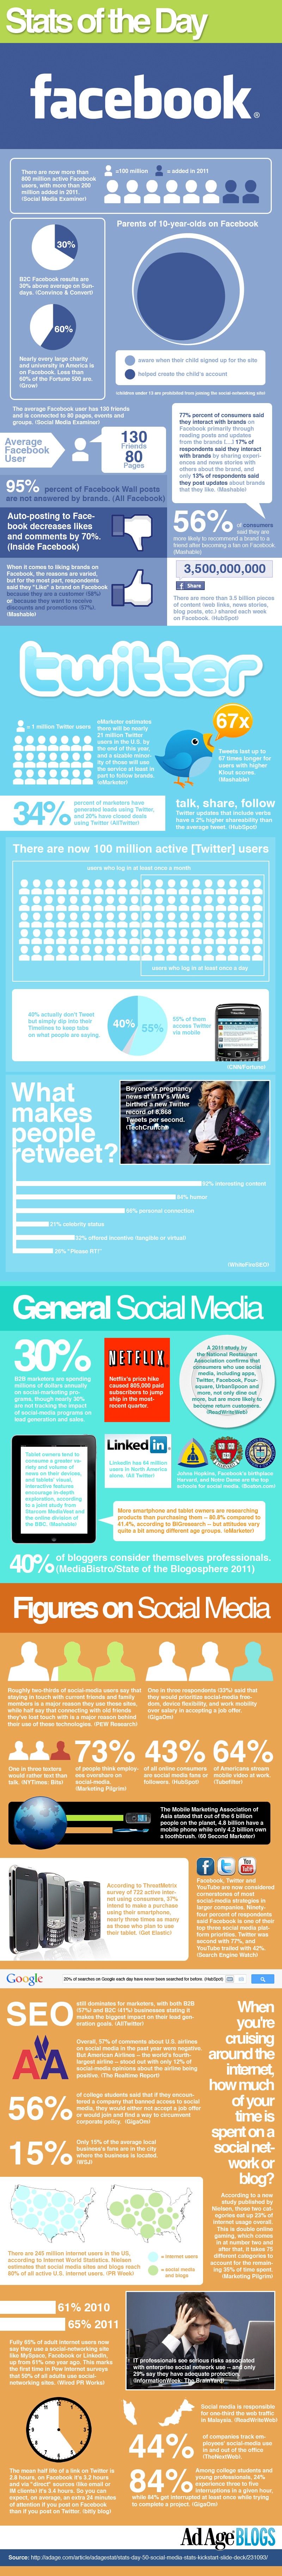 Statistiche Social Media nel 2011